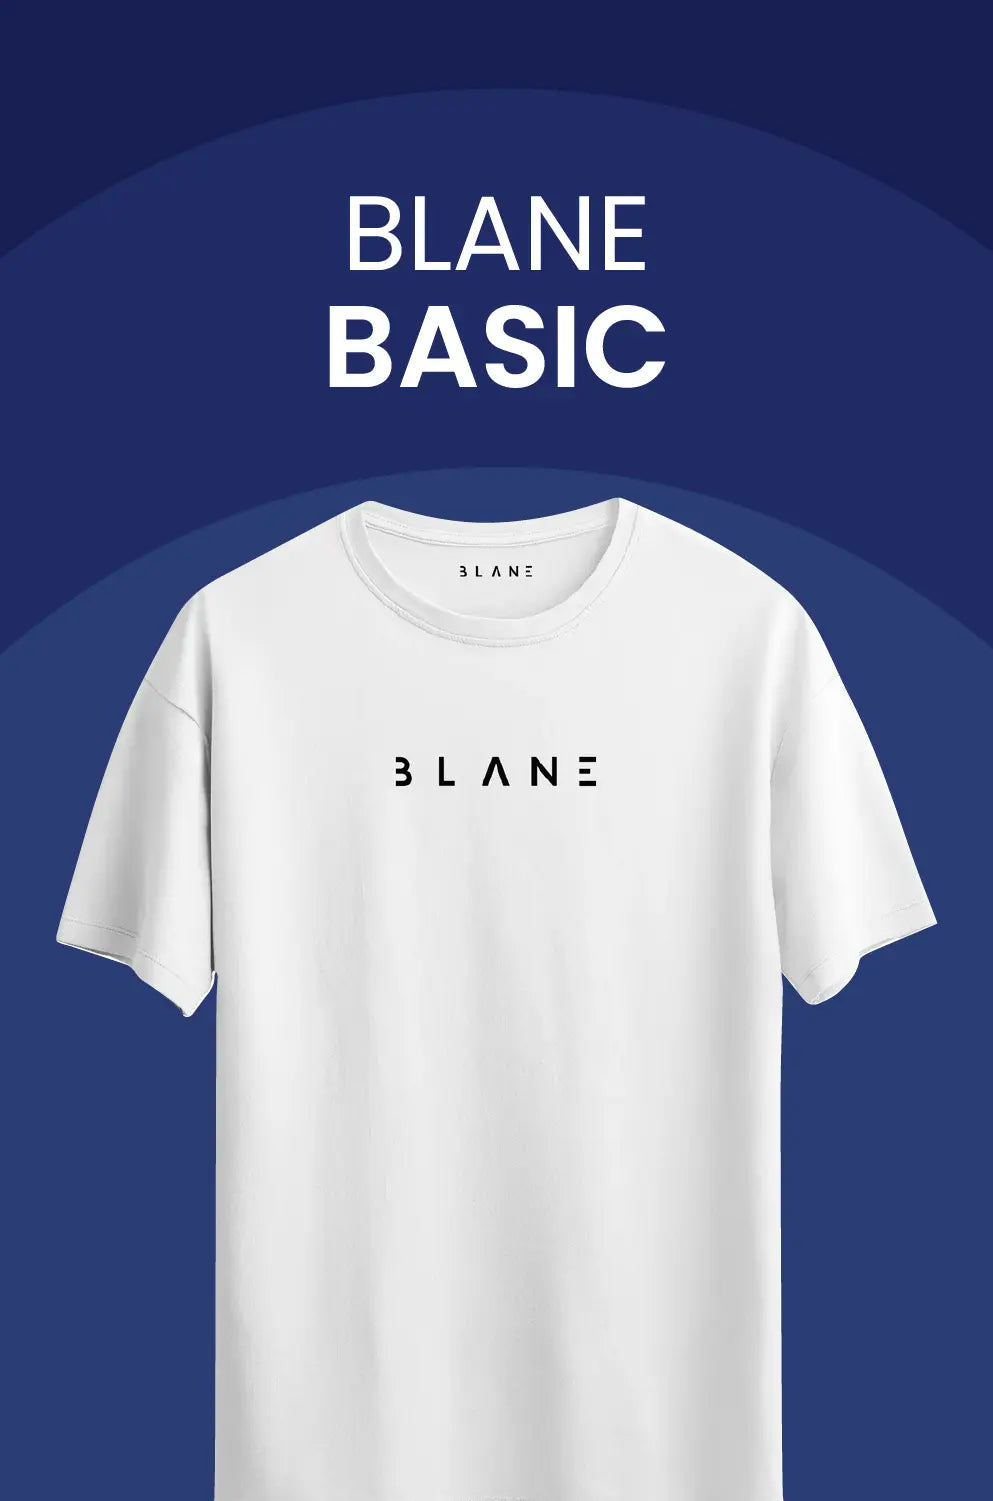 Beyaz 'BLANE' yazılı tişört, 'BLANE BASIC' koleksiyonuna yönlendiren link içeren mavi arka planlı görsel.